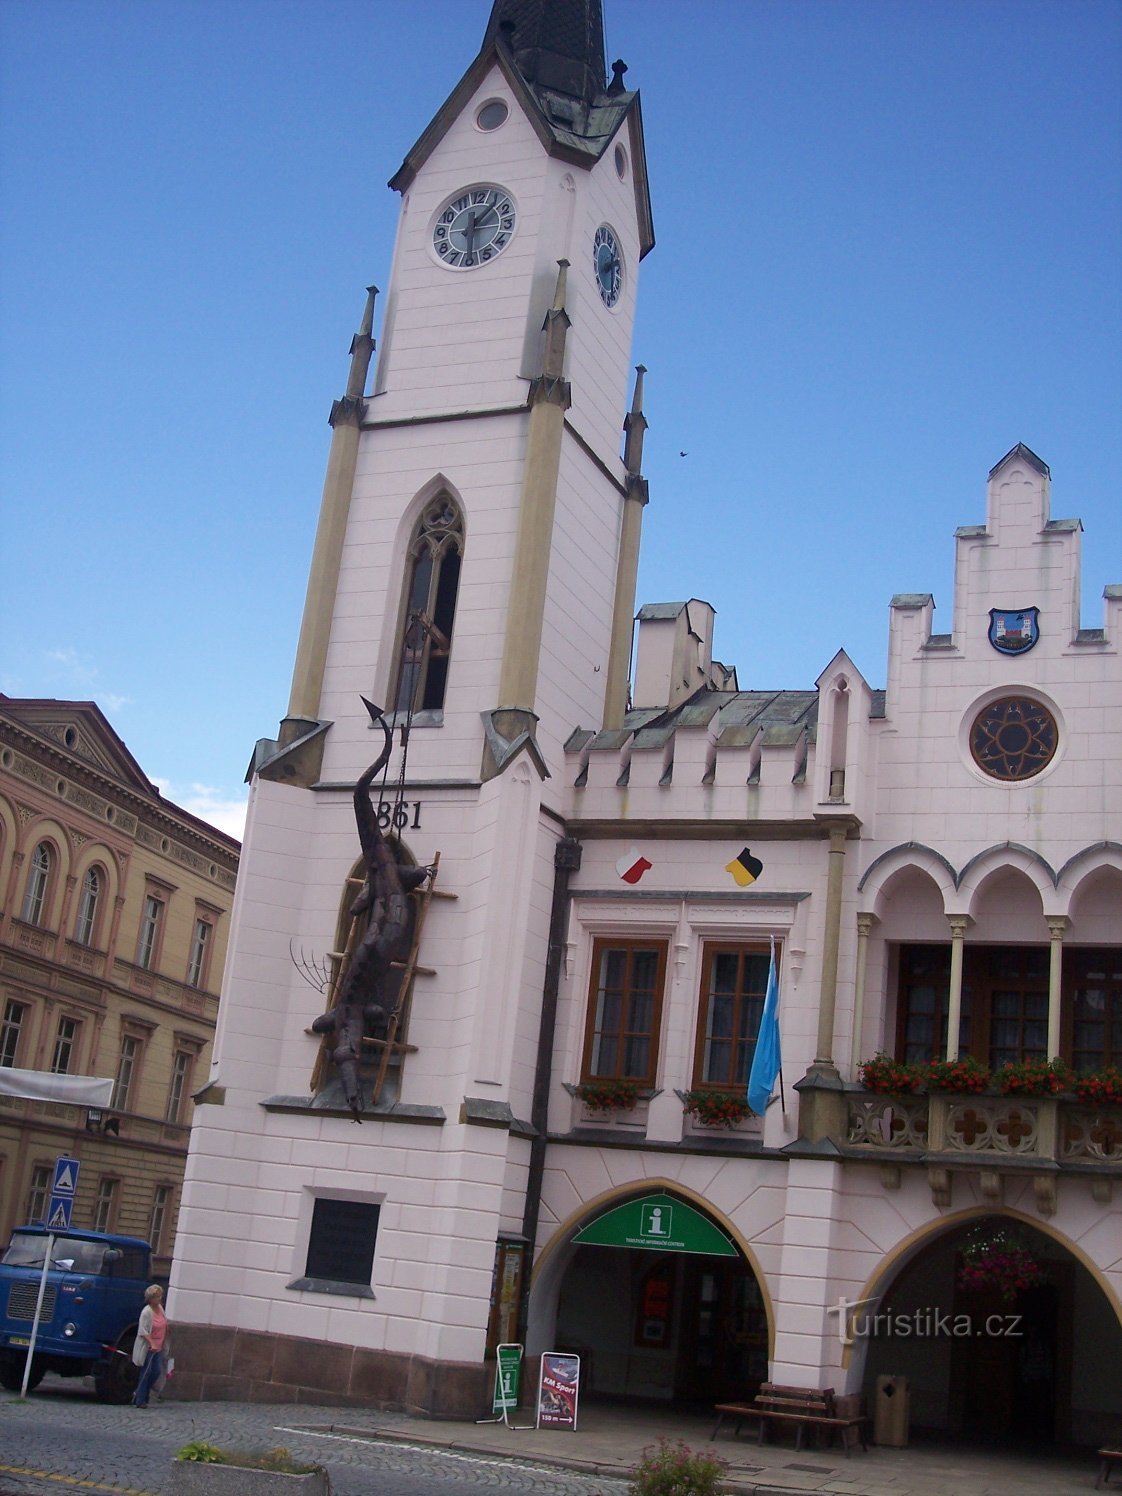 het originele renaissancistische stadhuis uit het einde van de 16e eeuw, pseudo-gotisch gewijzigd in 1861